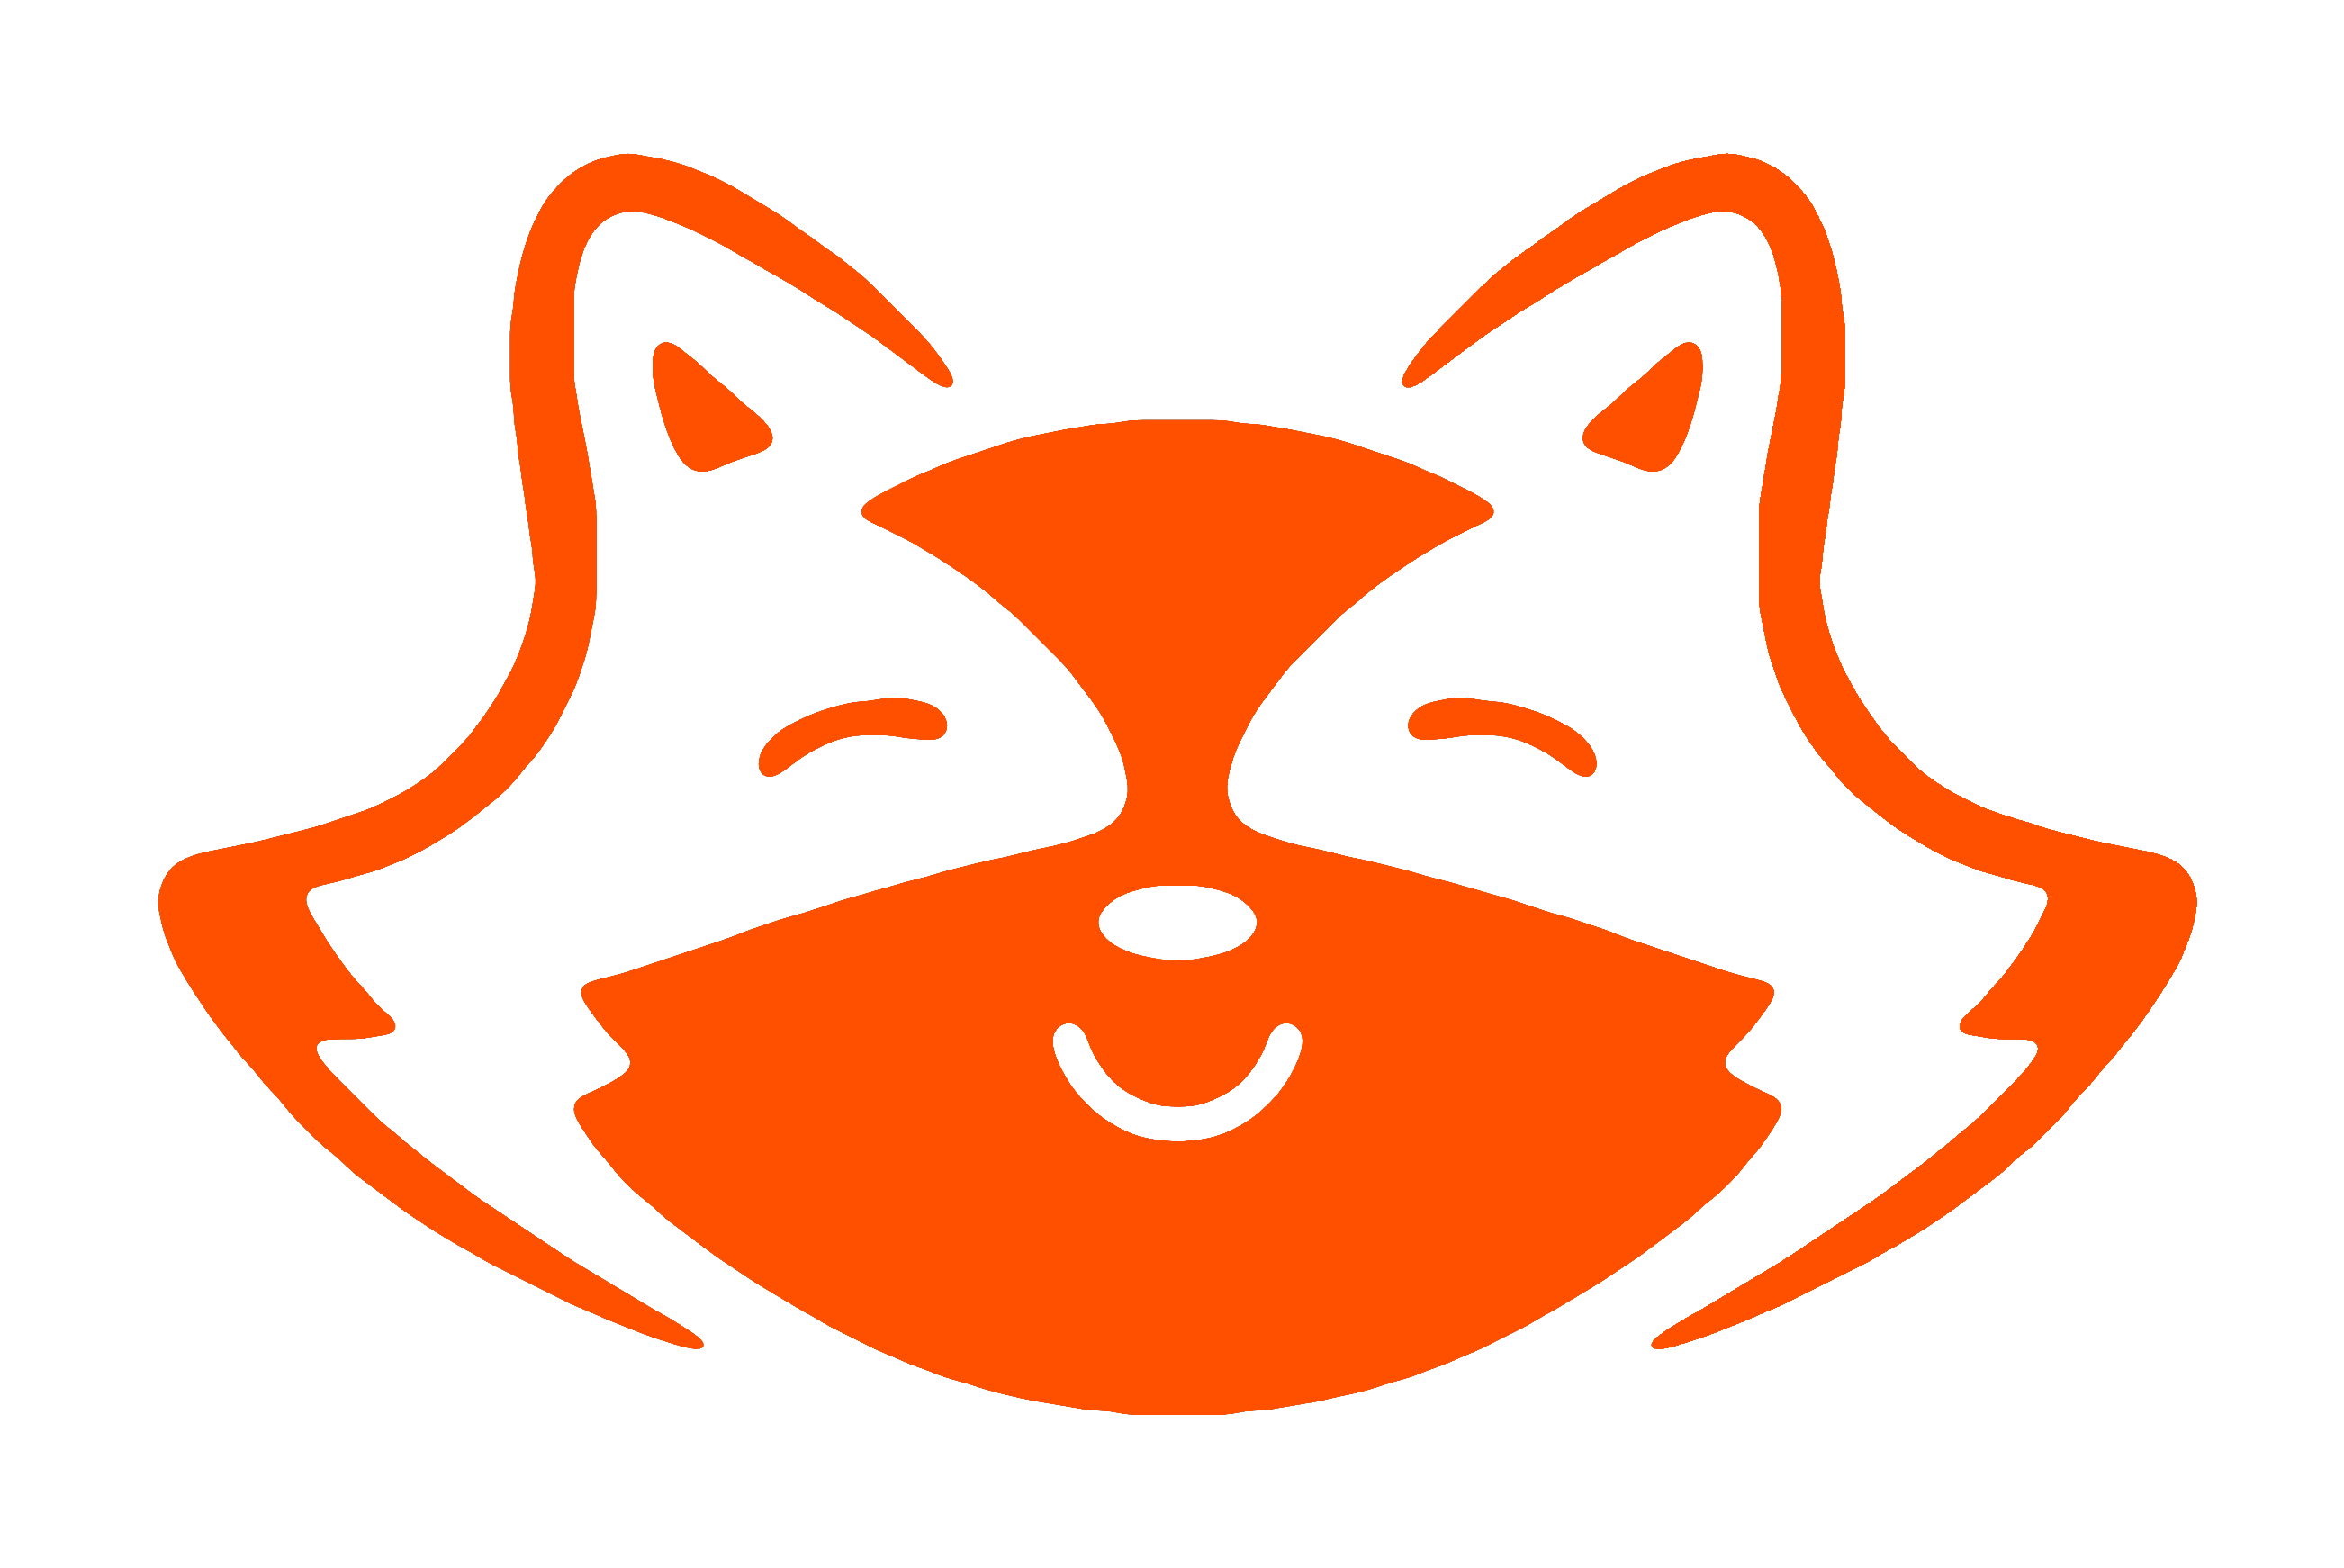 https://artpres.ro/wp-content/uploads/2021/04/Racoon-Logo-Orange.png